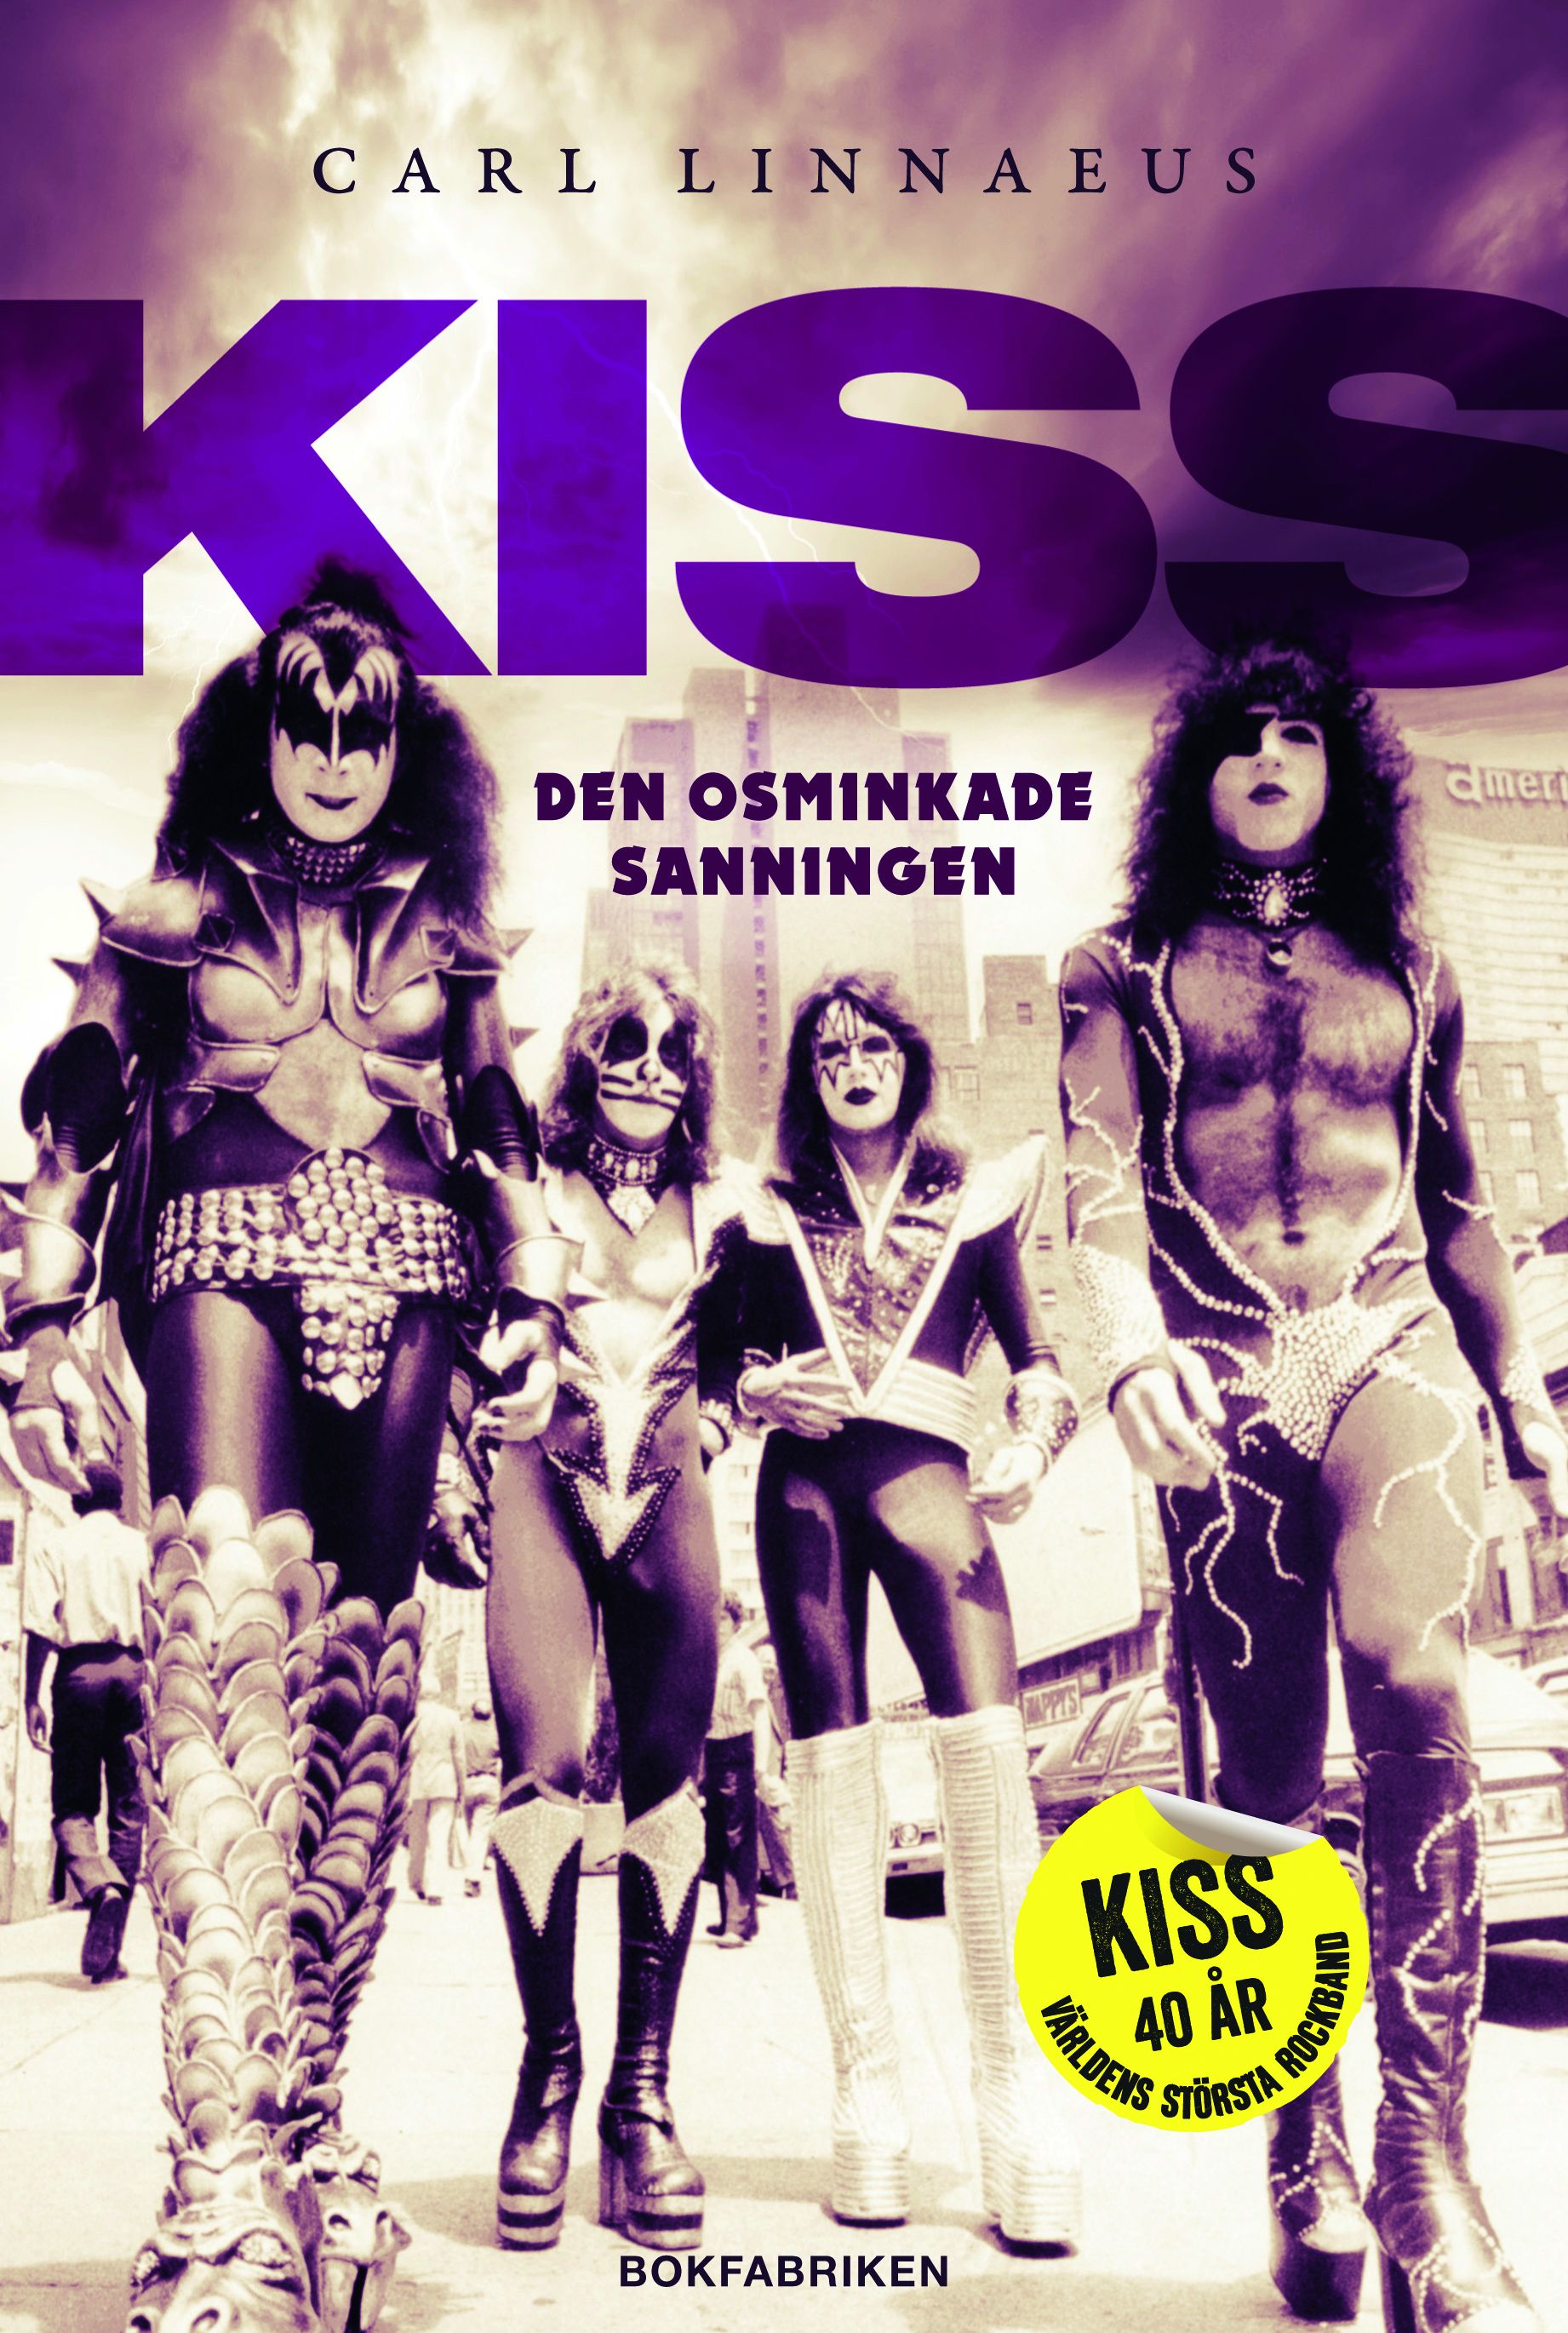 Kiss - Den osminkade sanningen, eBook by Carl Linnaeus